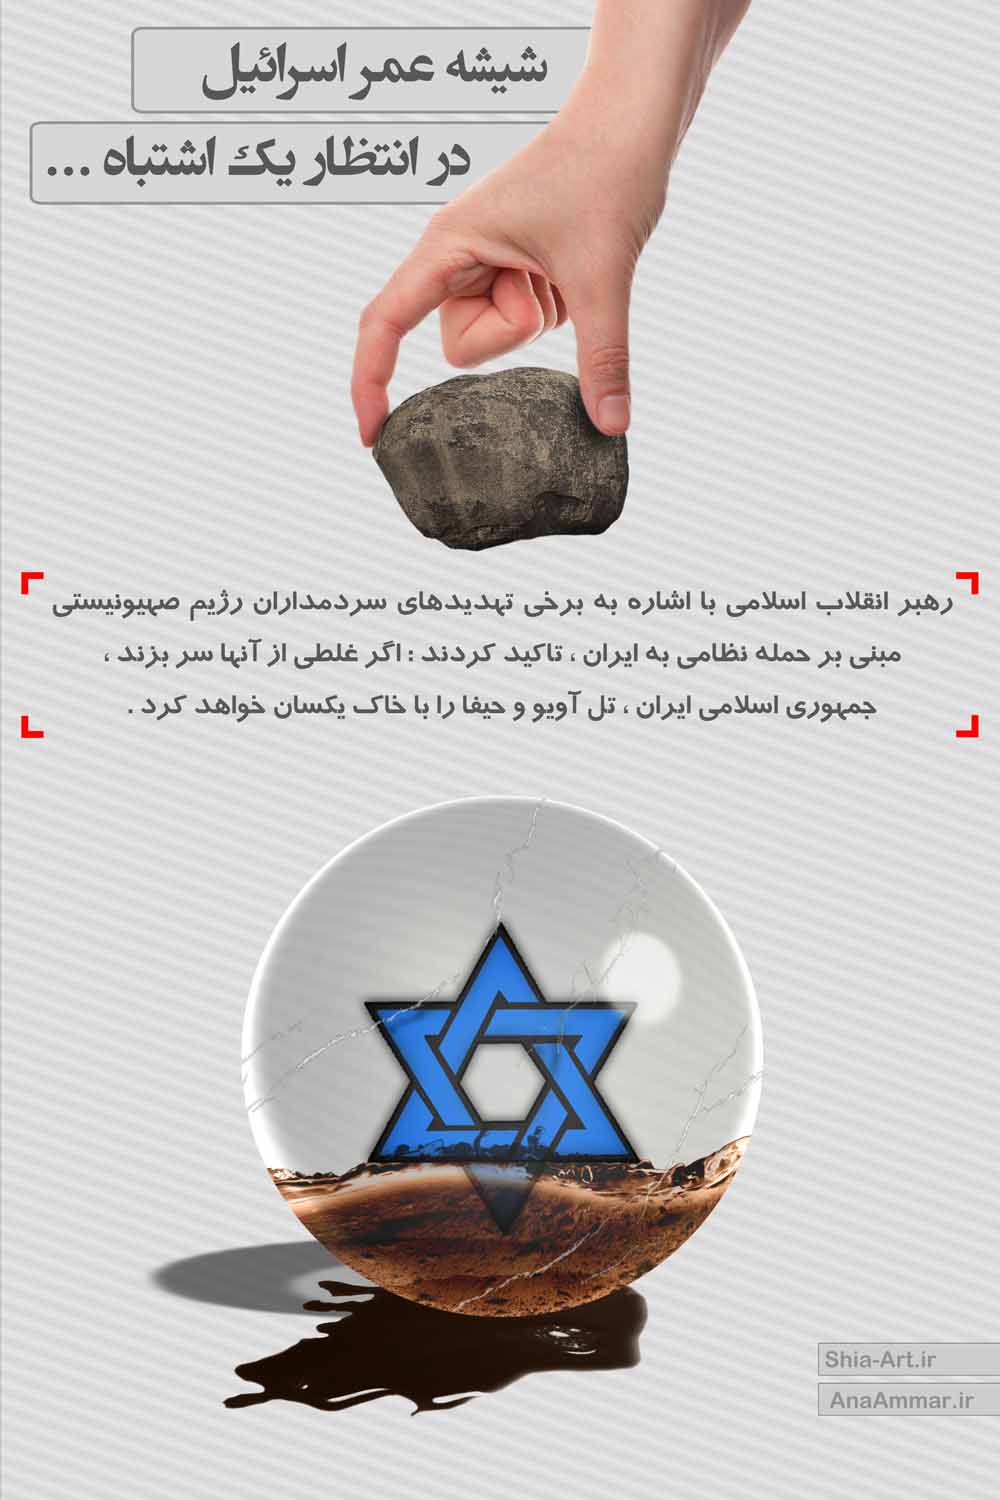 پوستر : شیشه عمر اسرائیل 